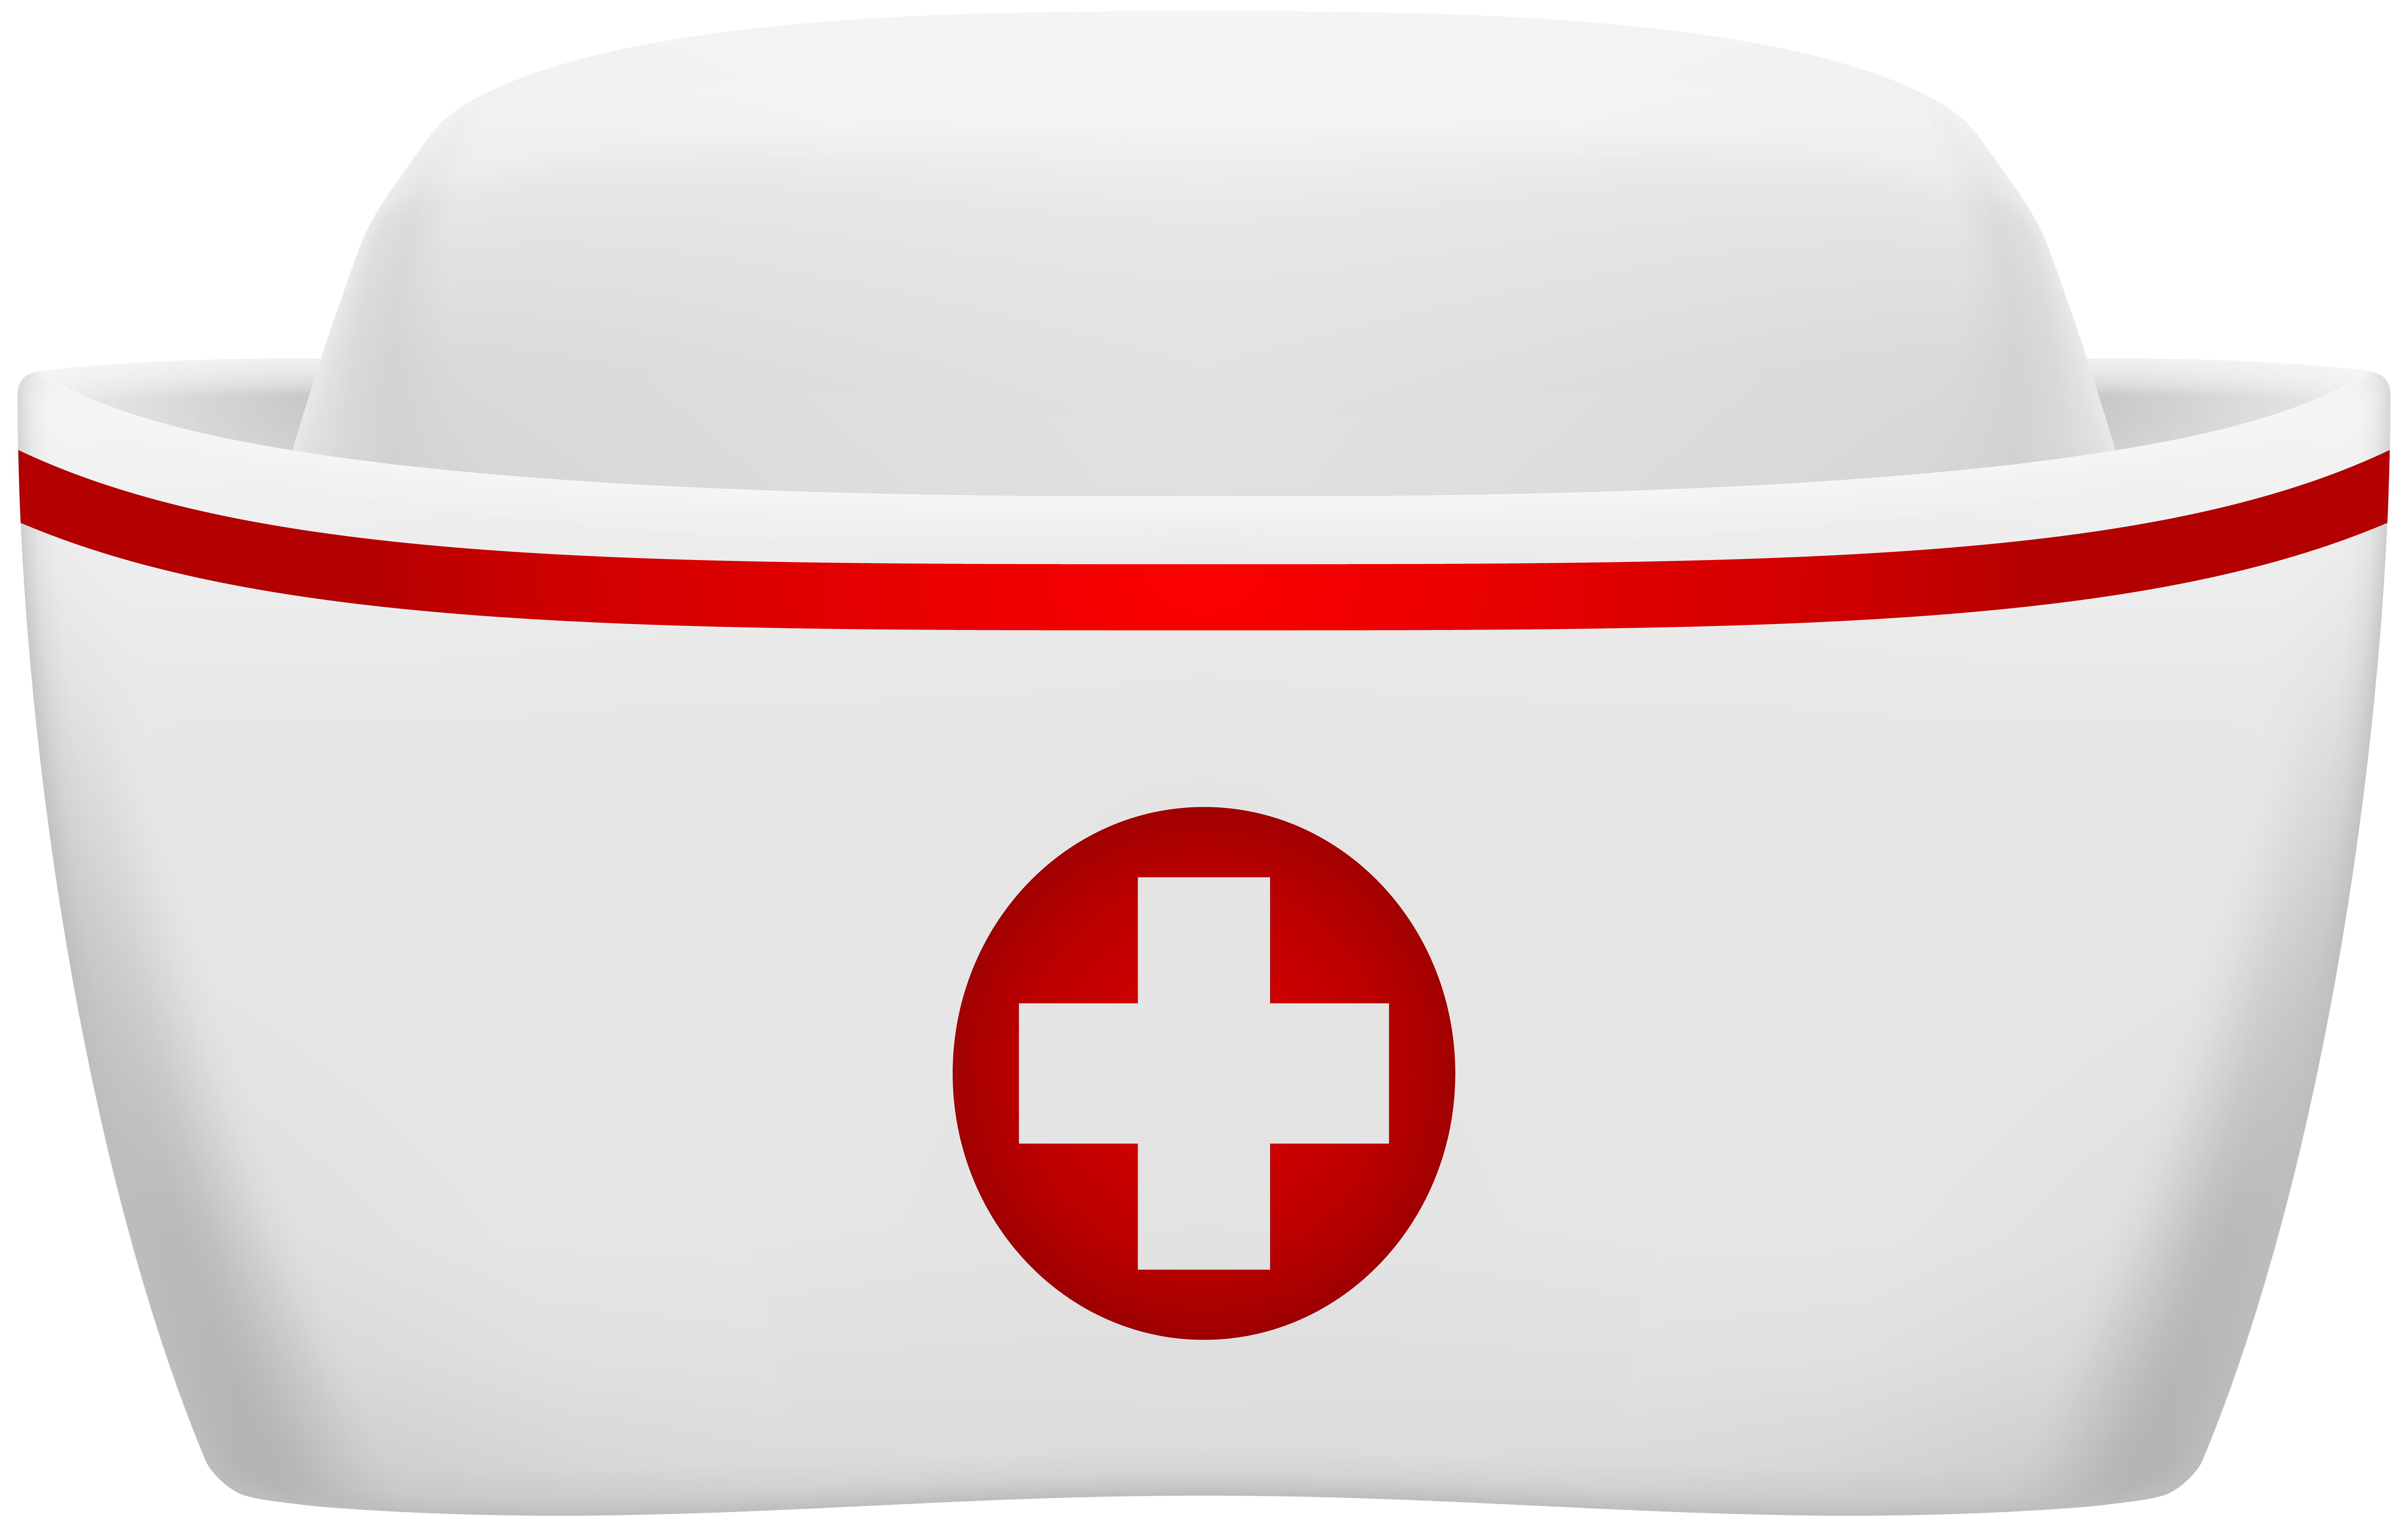 Dr hat. Шапочка медсестры. Медицинский колпак с красным крестом. Медицинская шапка с красным крестом. Медицинский колпак с крестом.